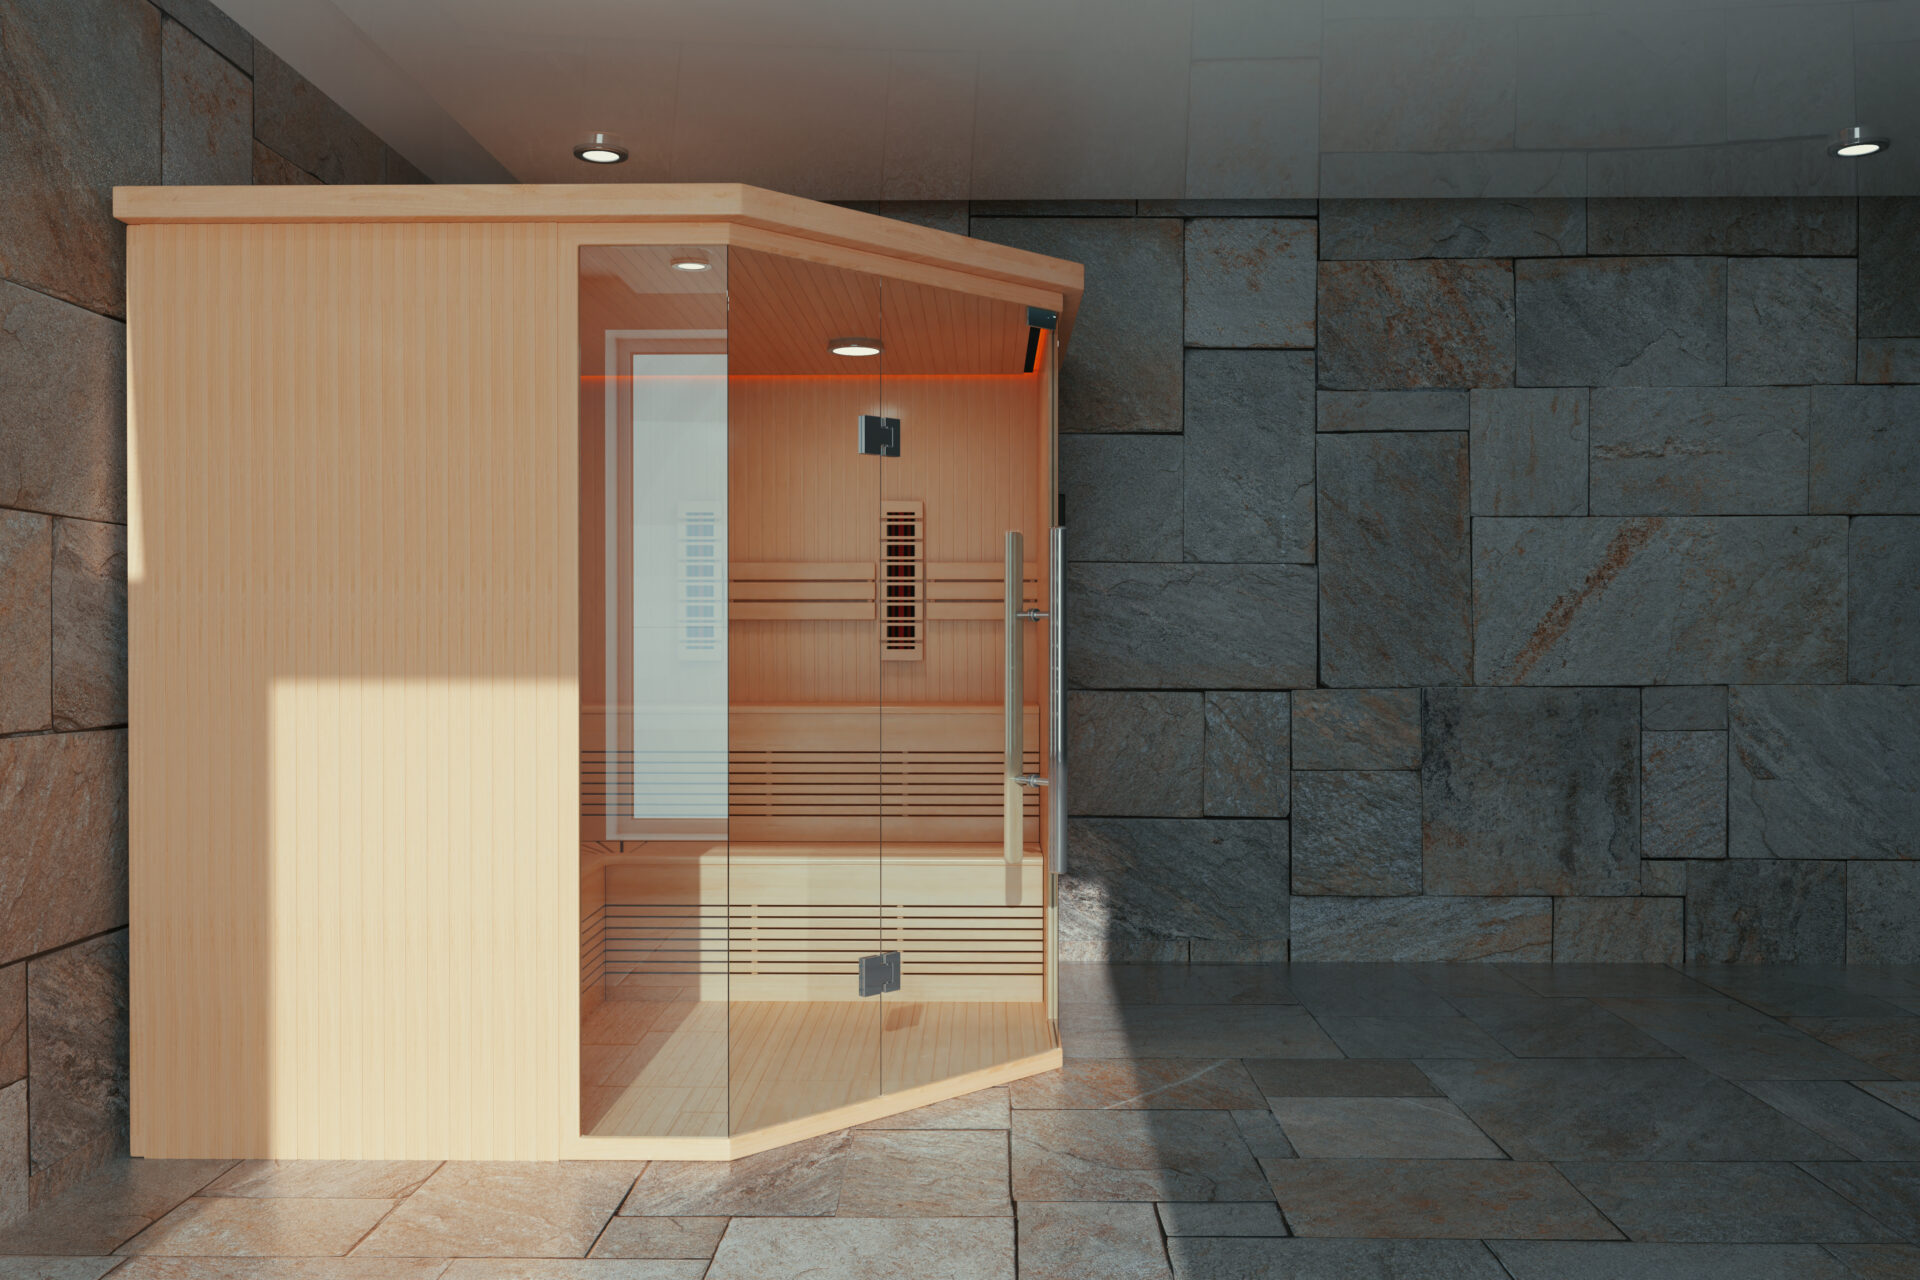 benefits of infrared sauna - at-home vs facility